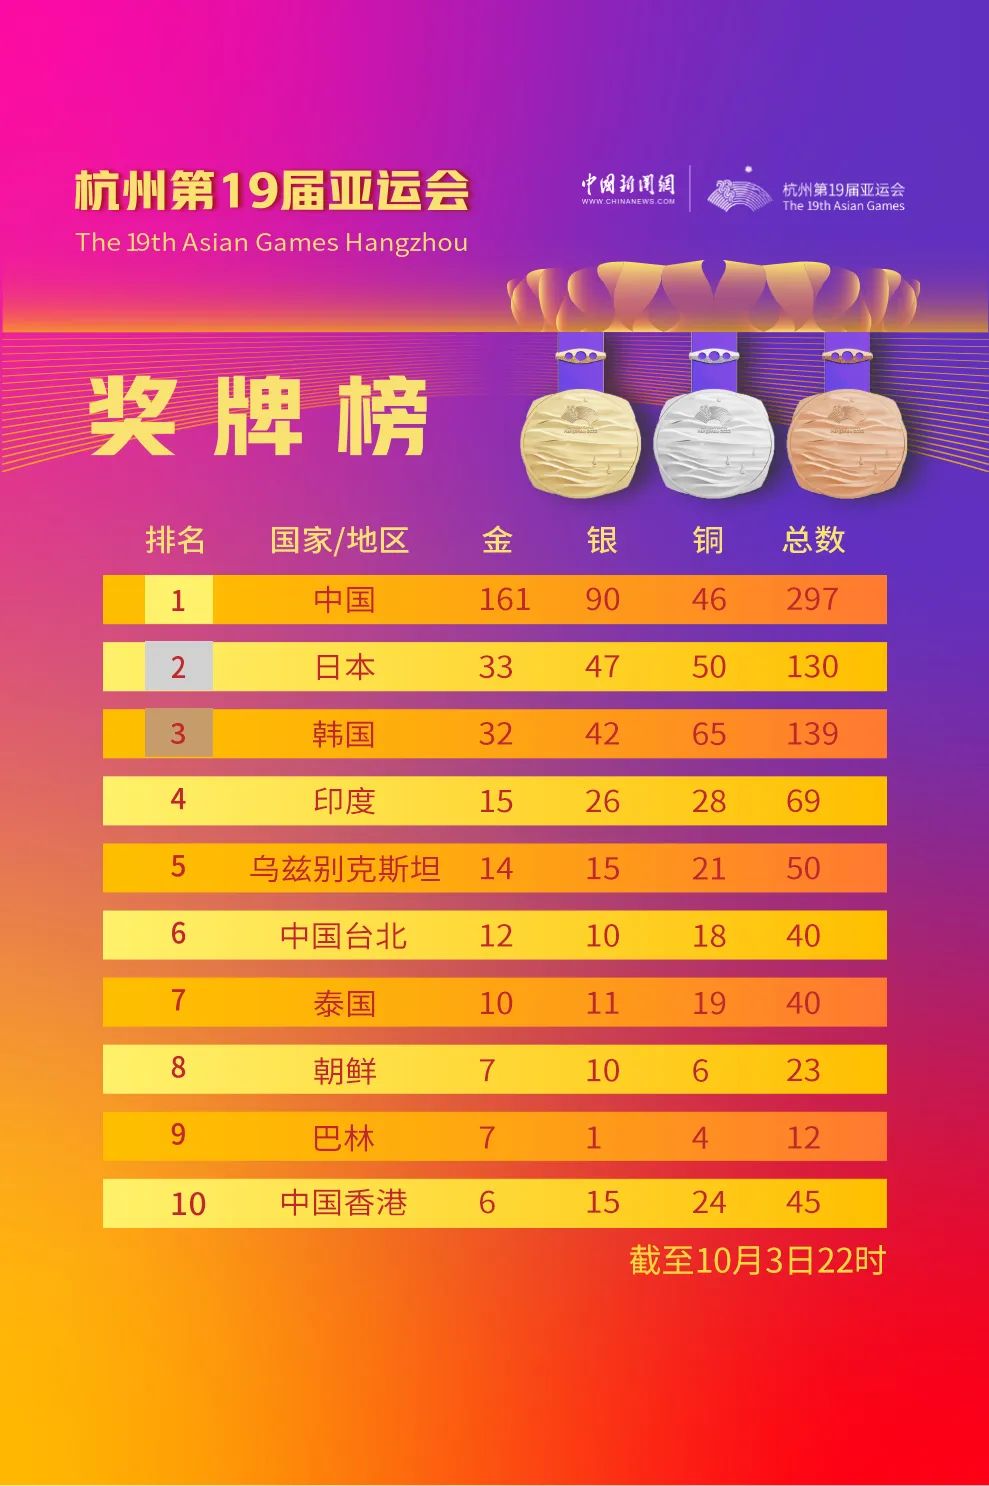 中国队单日再添14枚金牌 日韩竞争奖牌榜第二